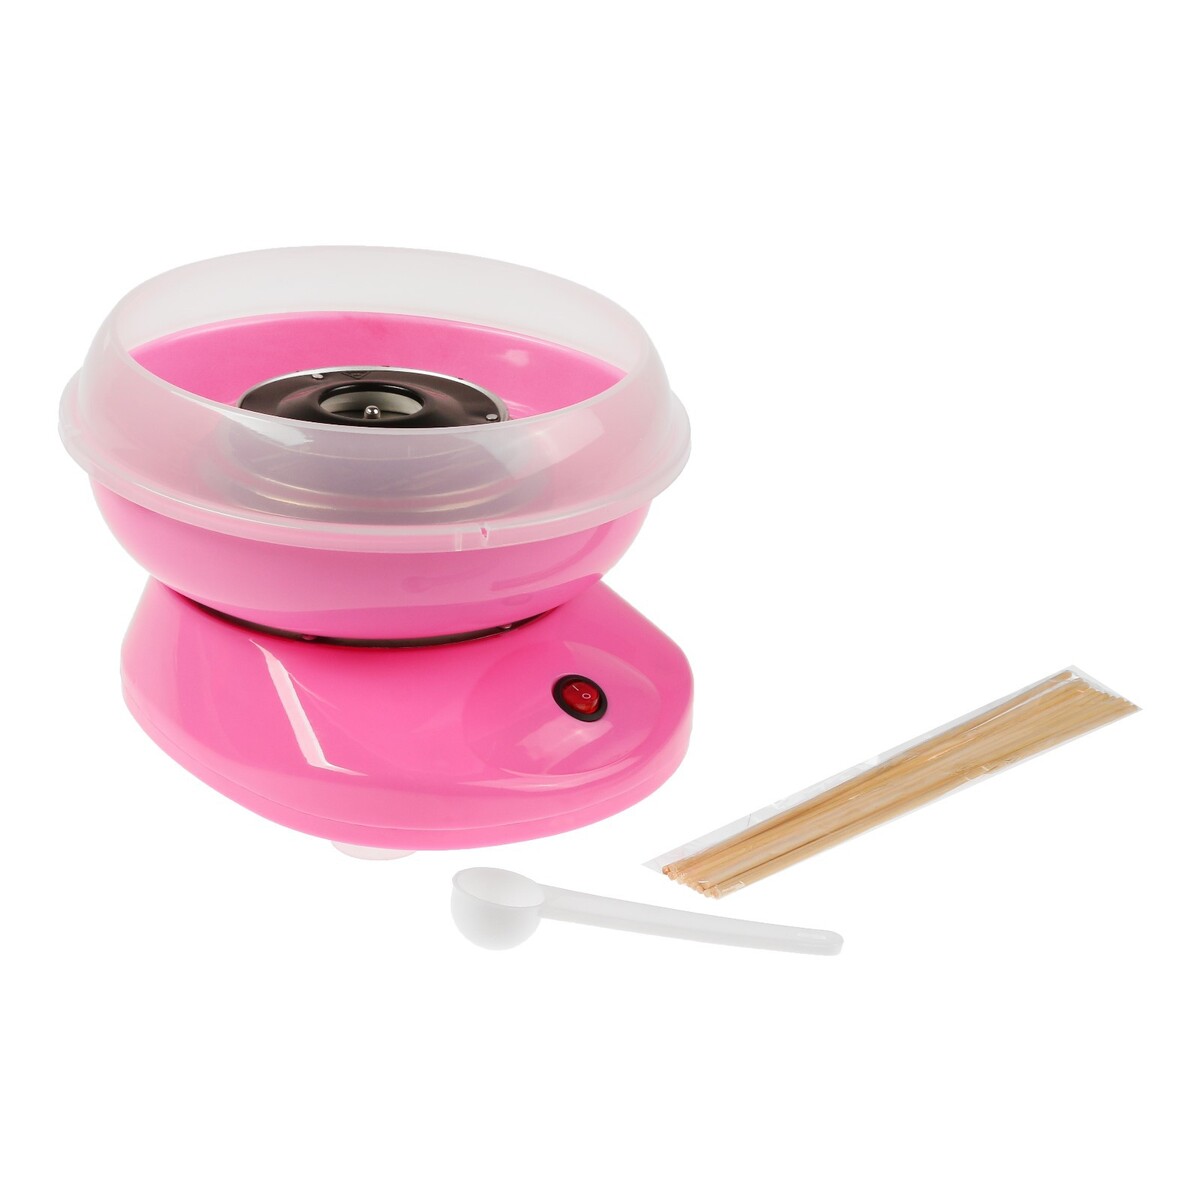 Аппарат для приготовления сладкой ваты luazon lcc-01, 500 вт, розовый